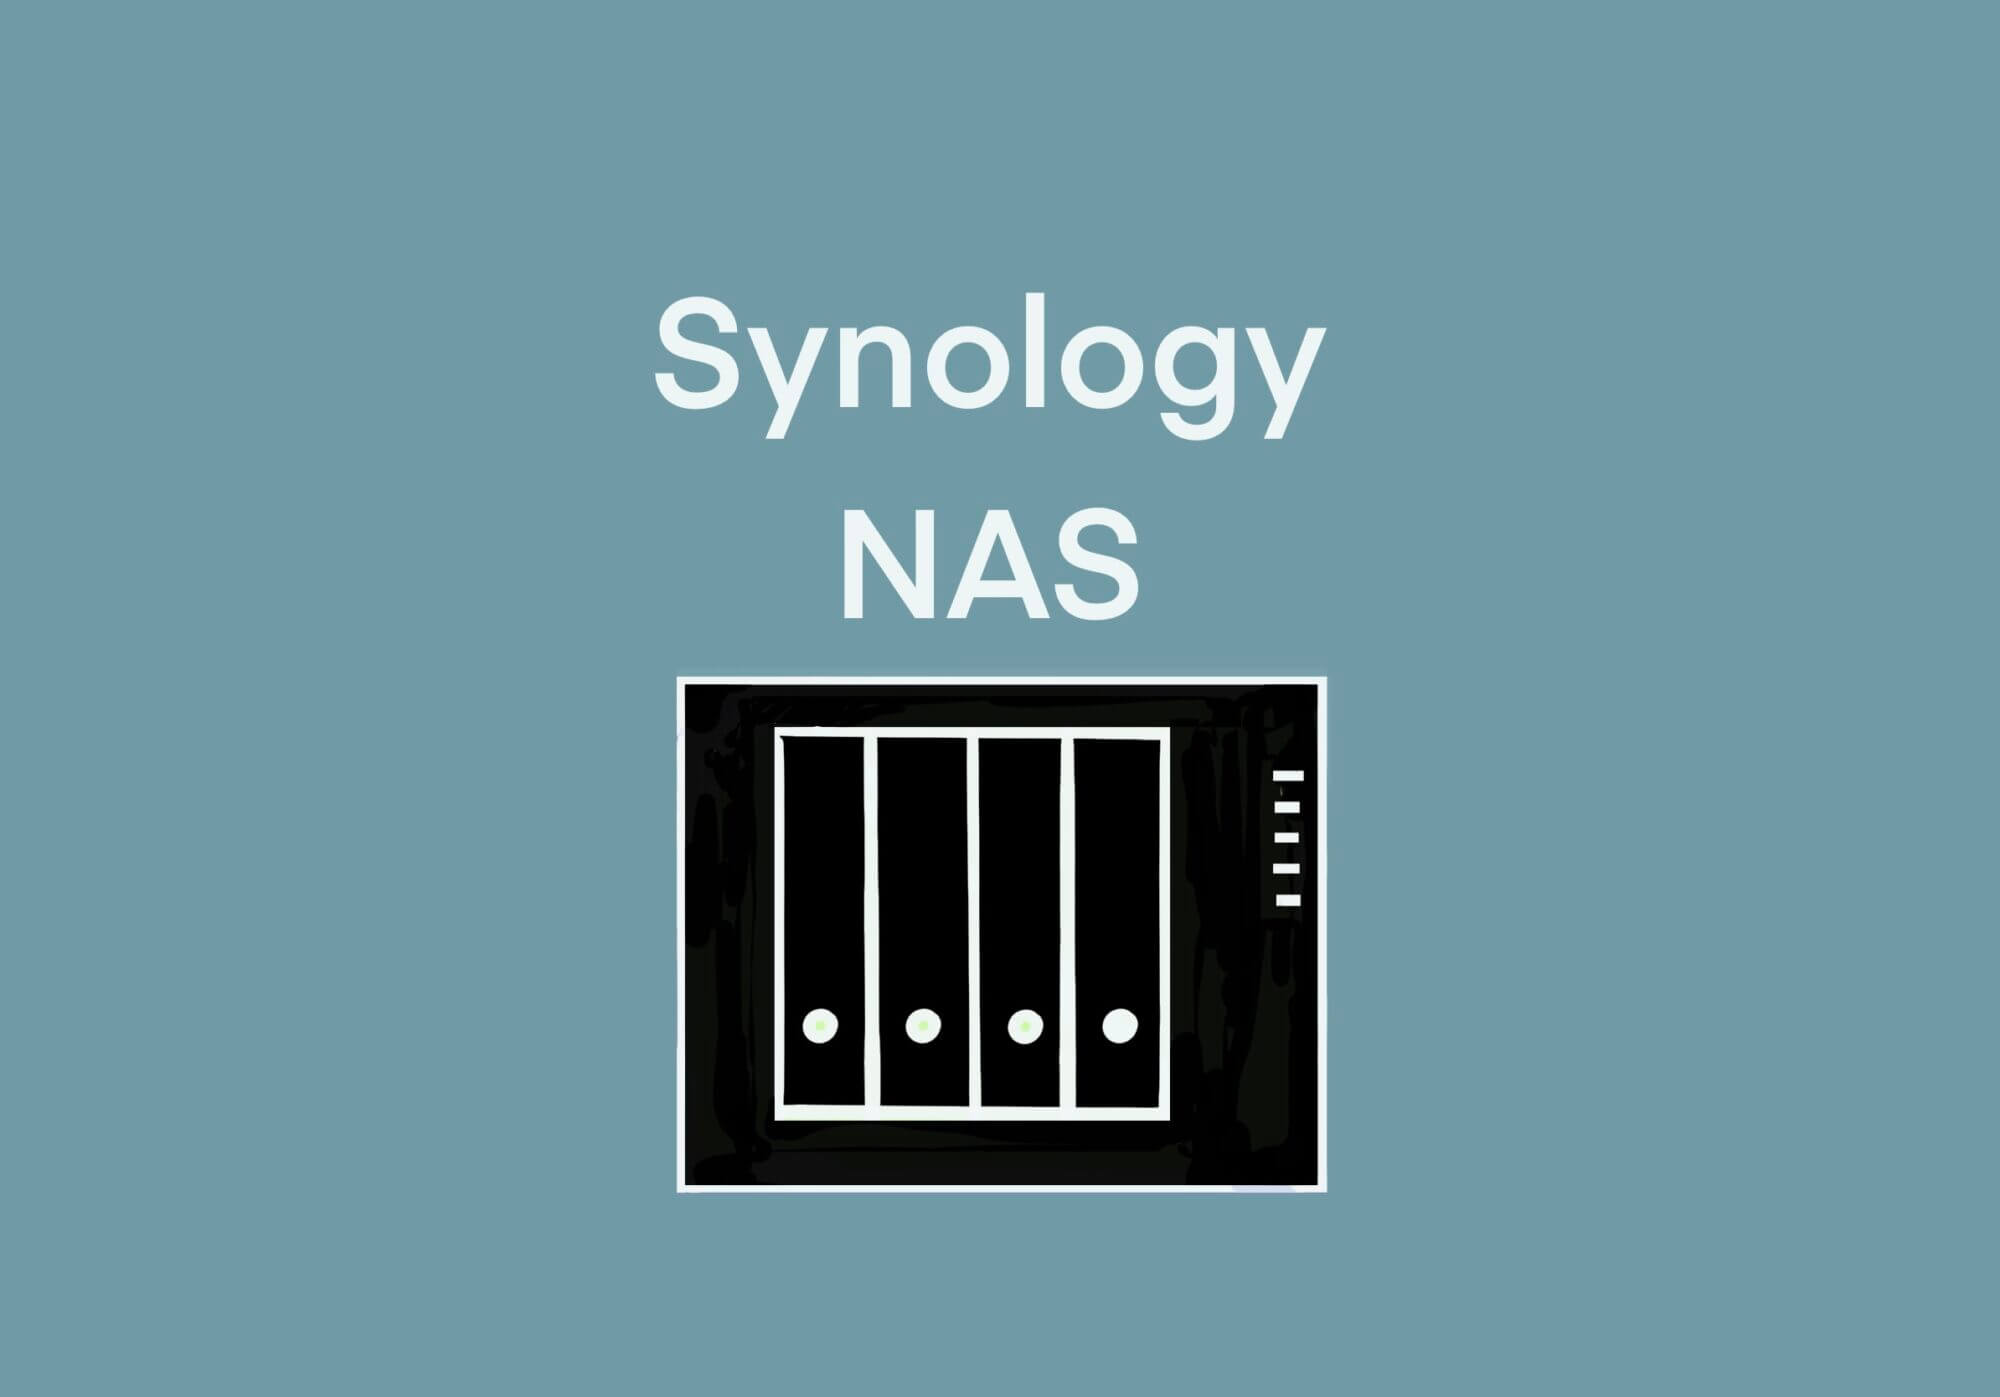 [Synology] NASのネットワークツールからWOLを発信してと思ったが、ルーターはRT2600acなので、iPhone用のアプリDS ROUTERの wake on LAN から自宅のPC/ビデオレコーダー等を起動する [2021/06/19] ID508